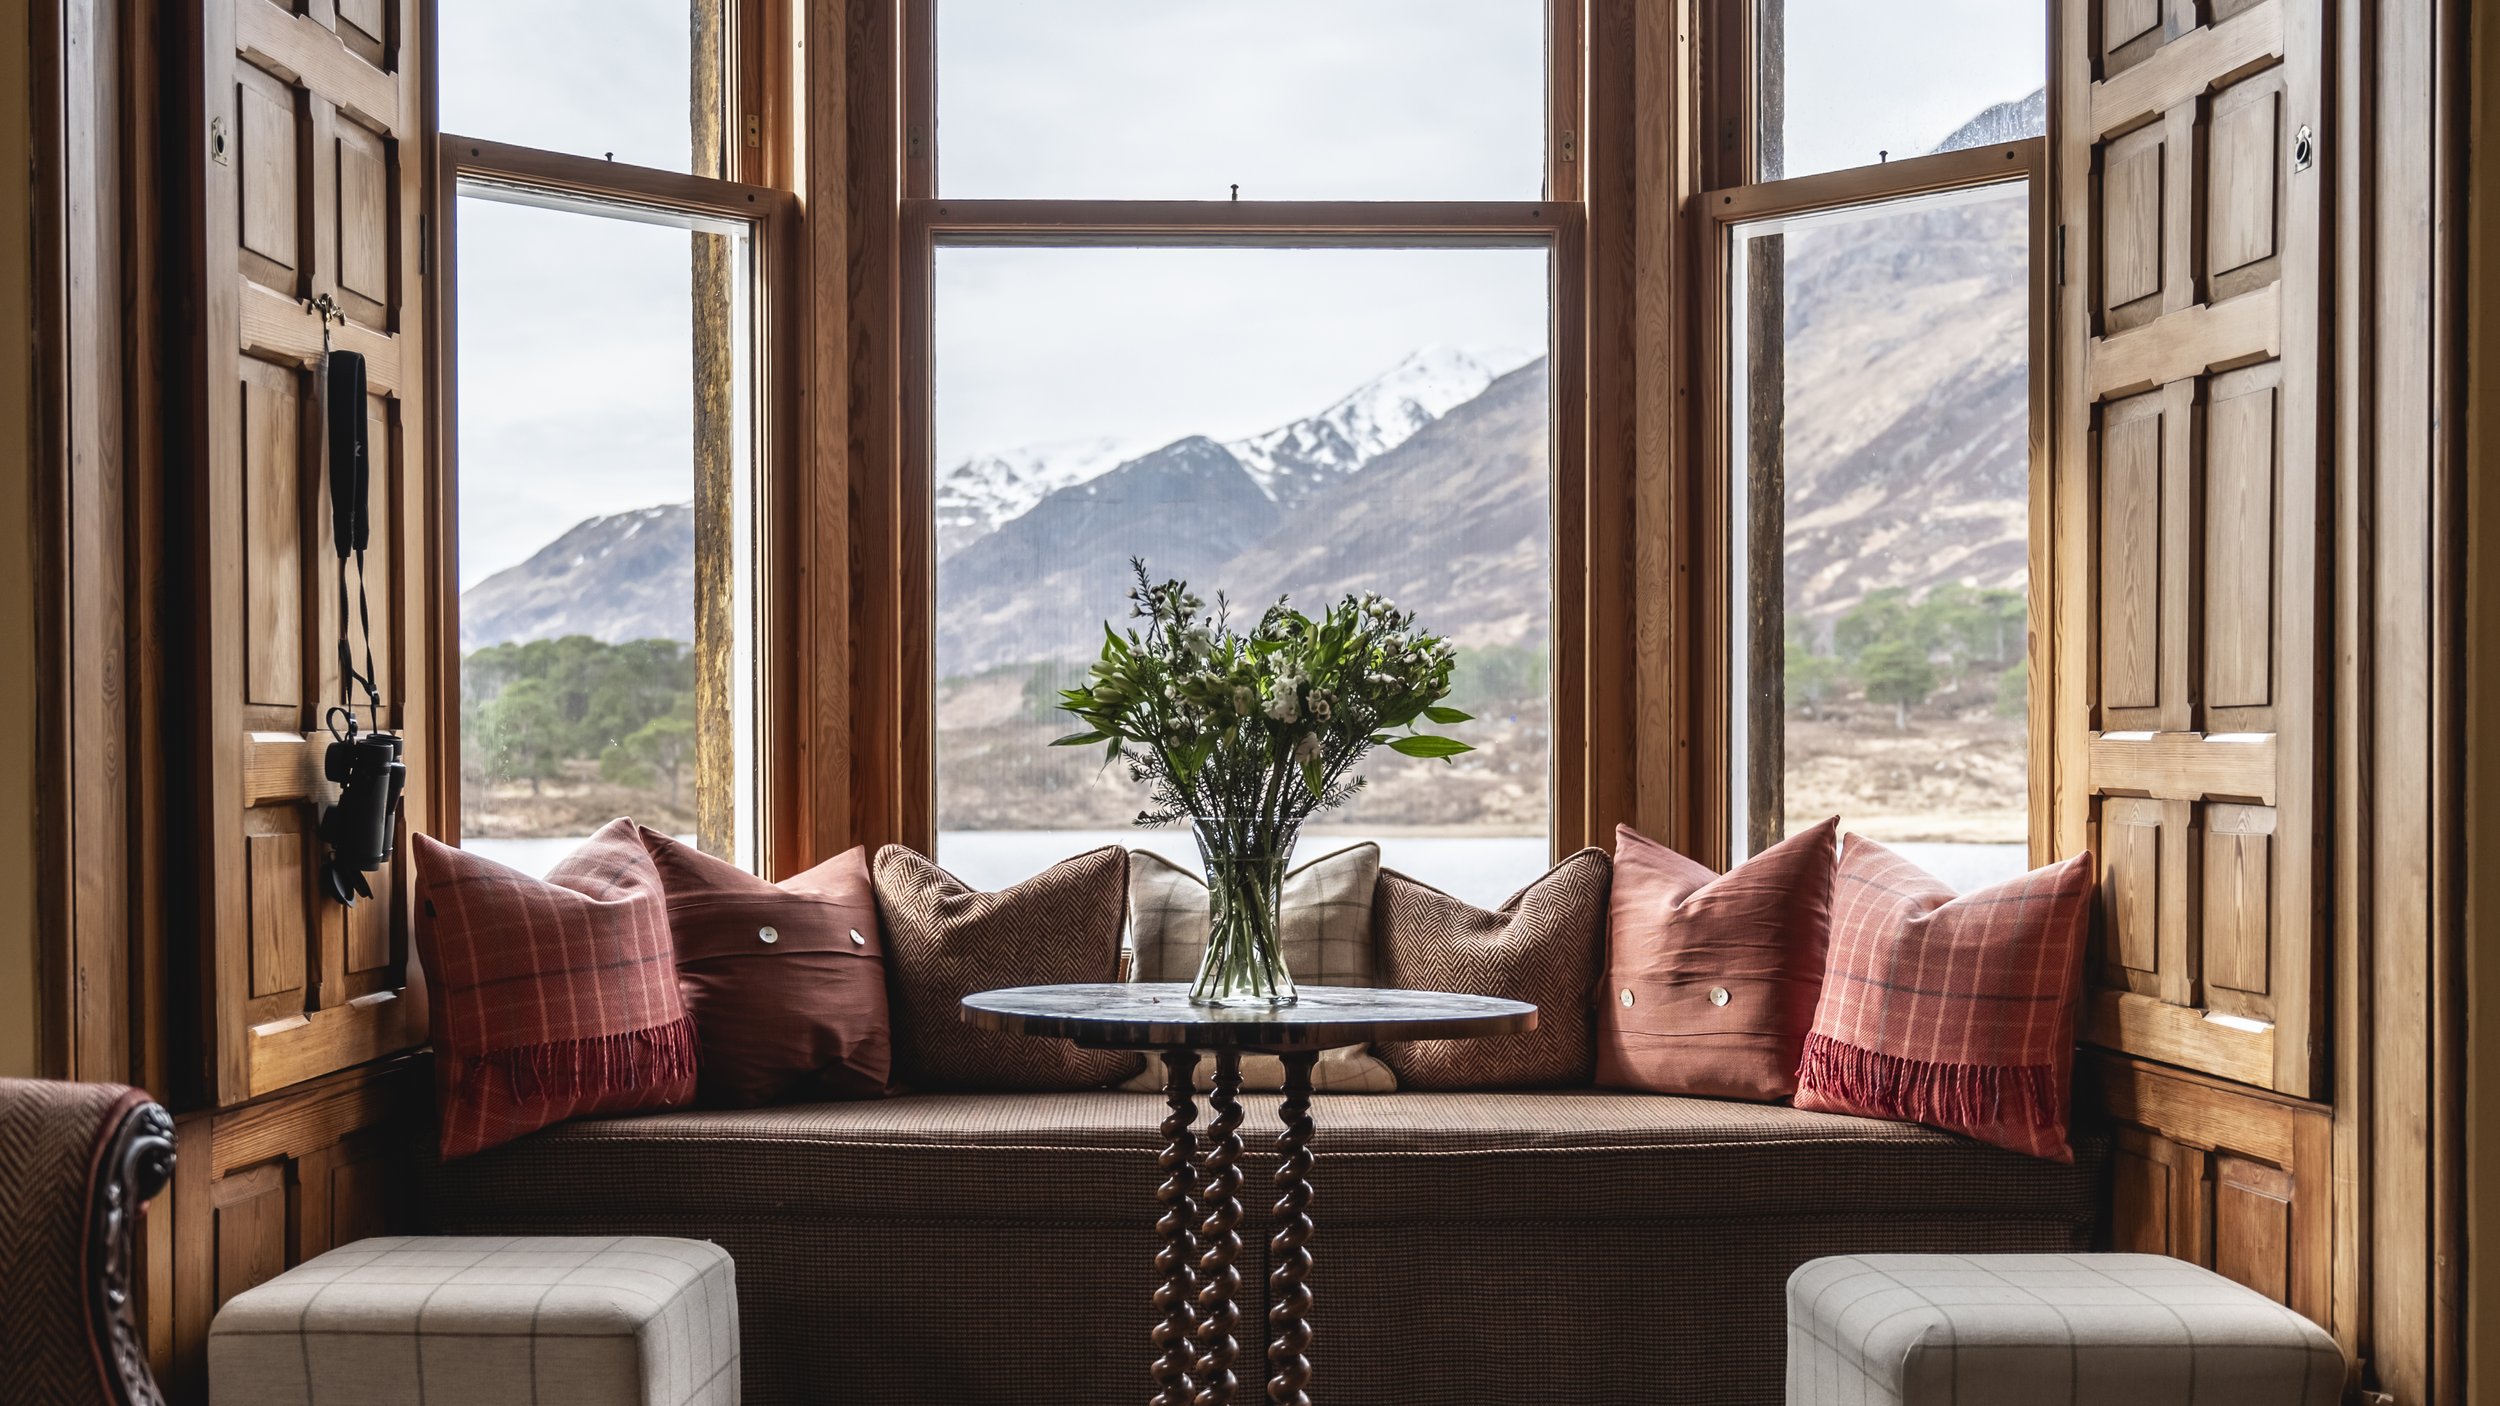 Glen-Affric-Scotland-Highlands-Luxury-Sitting-Room-Window.jpg